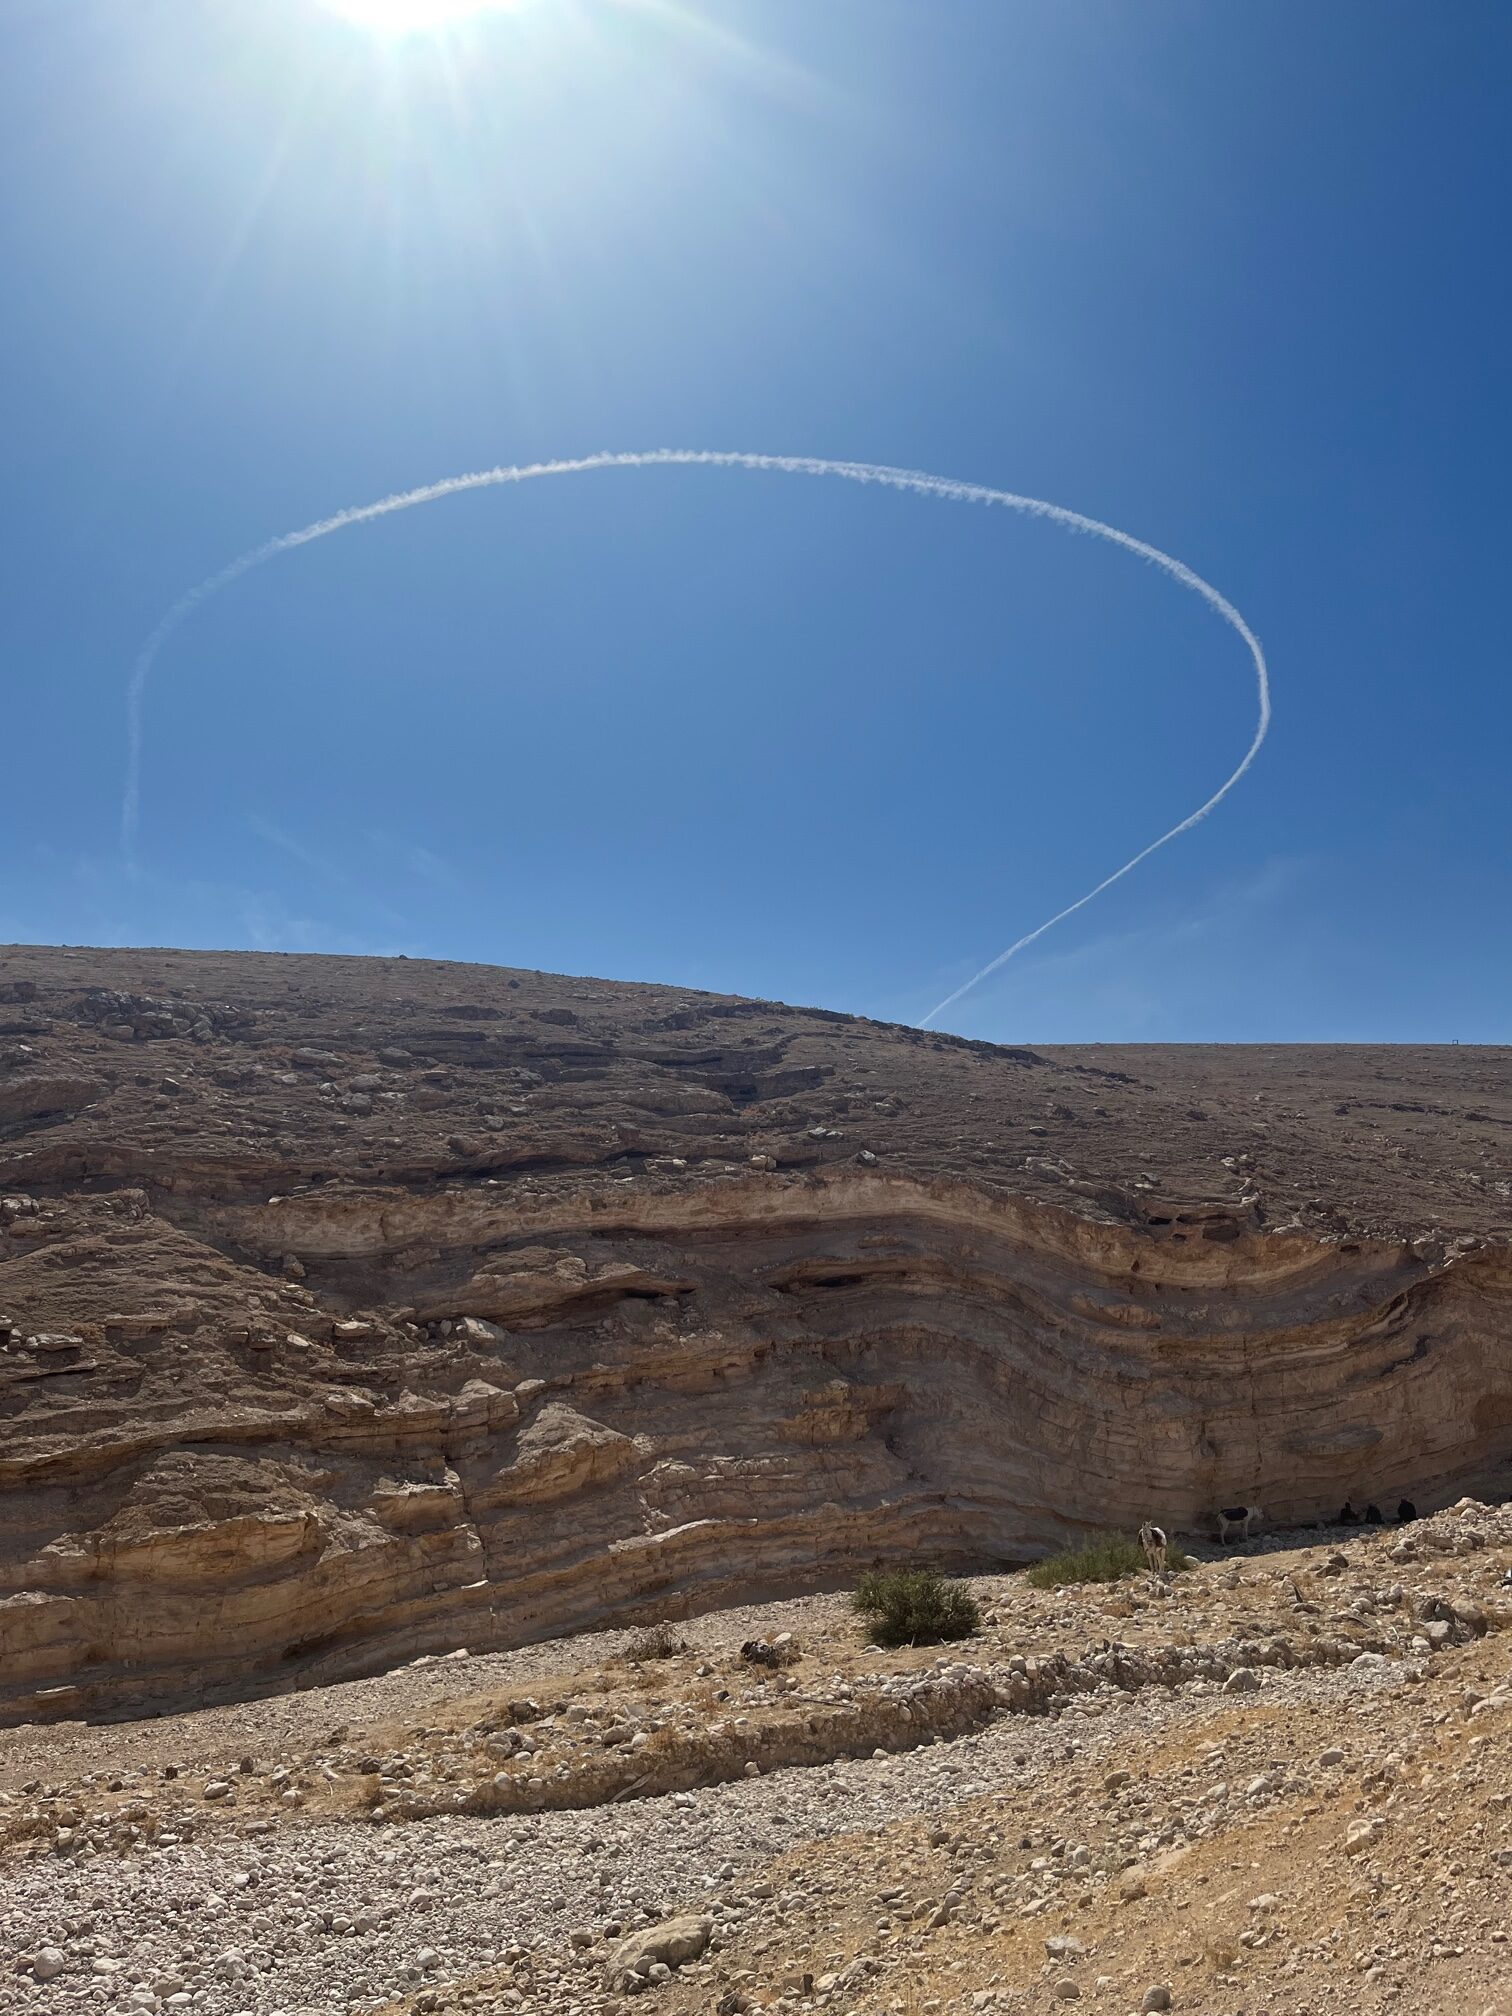 Raketen über der Wüste Judäa - fotografiert von Dr. Lewandowski